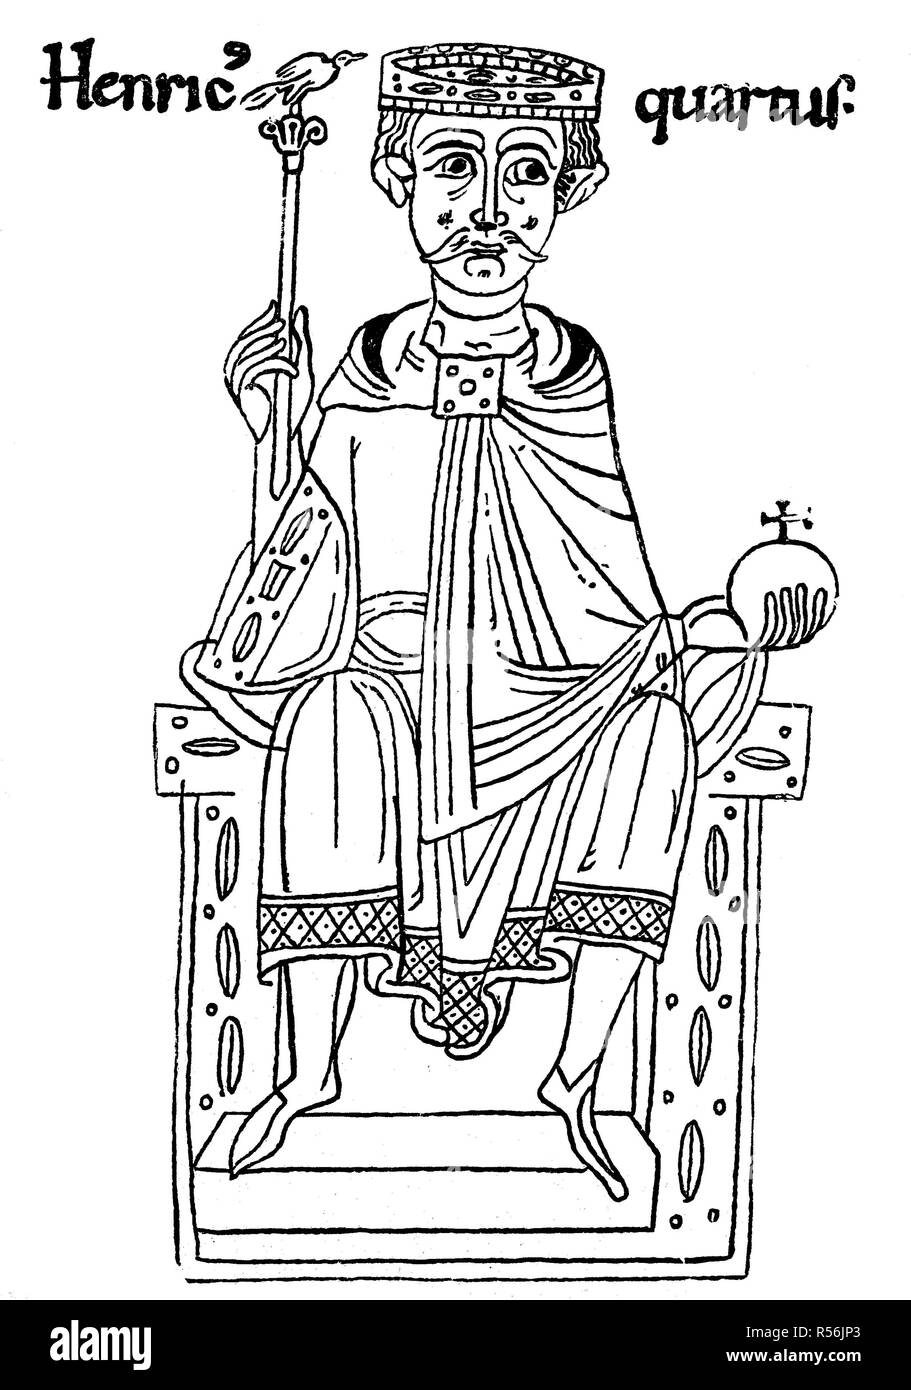 Henri IV sur le trône avec couronne, sceptre et orb, miniature de la chronique de l'empereur du moine de l'Ekkards de Aurach Banque D'Images